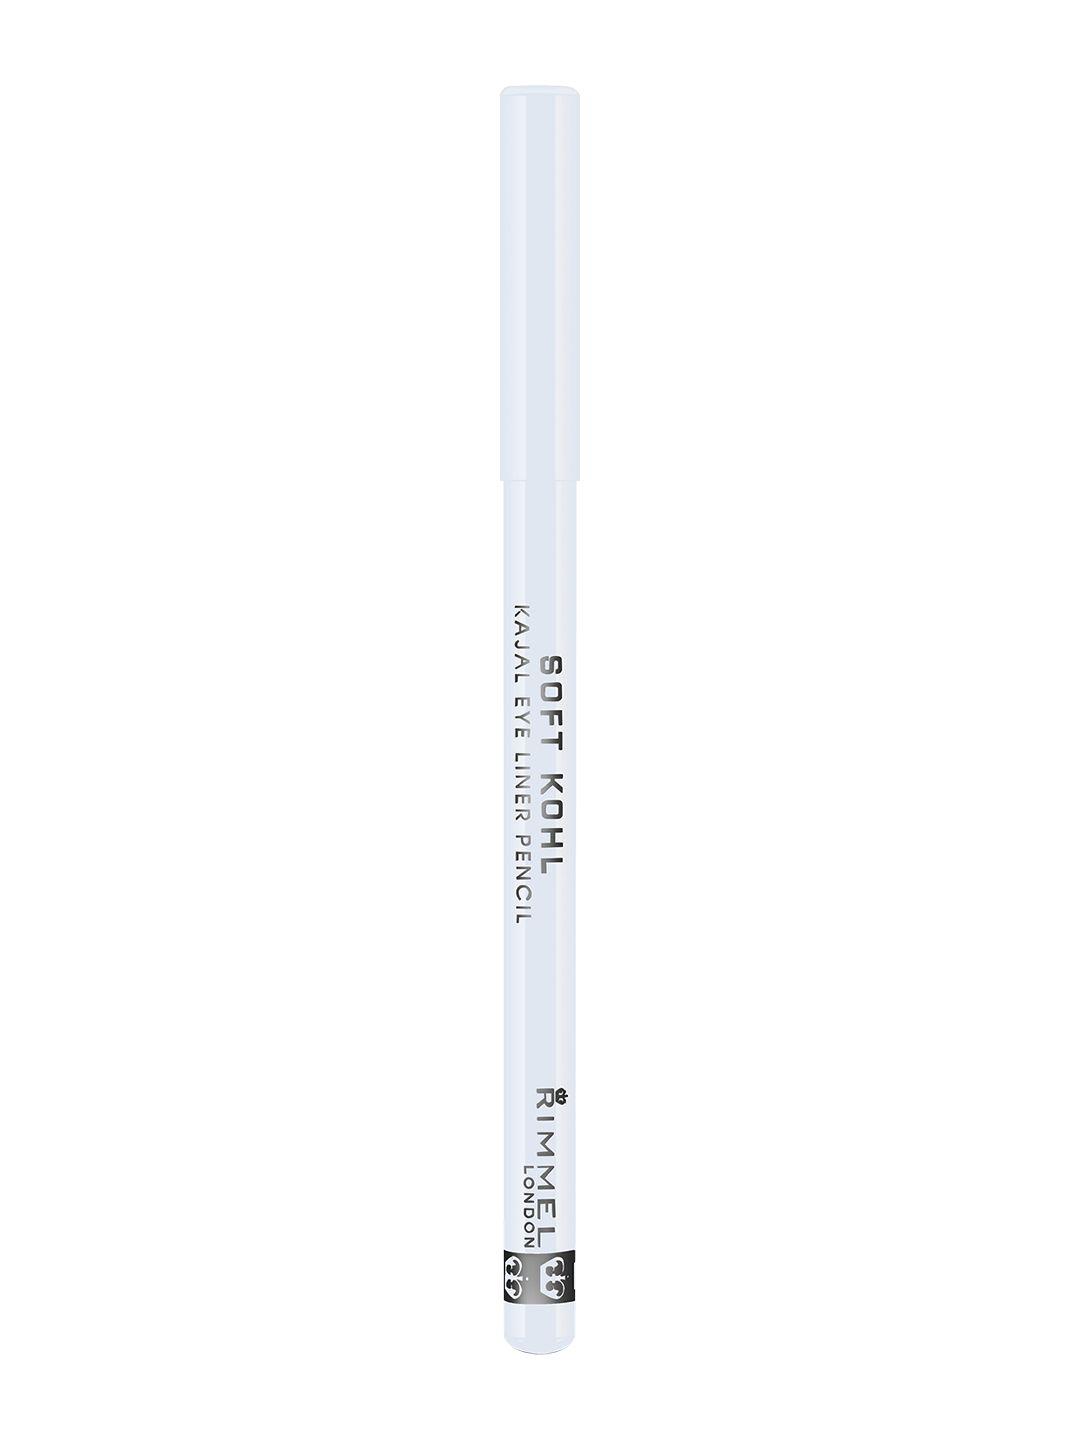 rimmel london soft kohl long-lasting kajal eye liner pencil - pure white 71